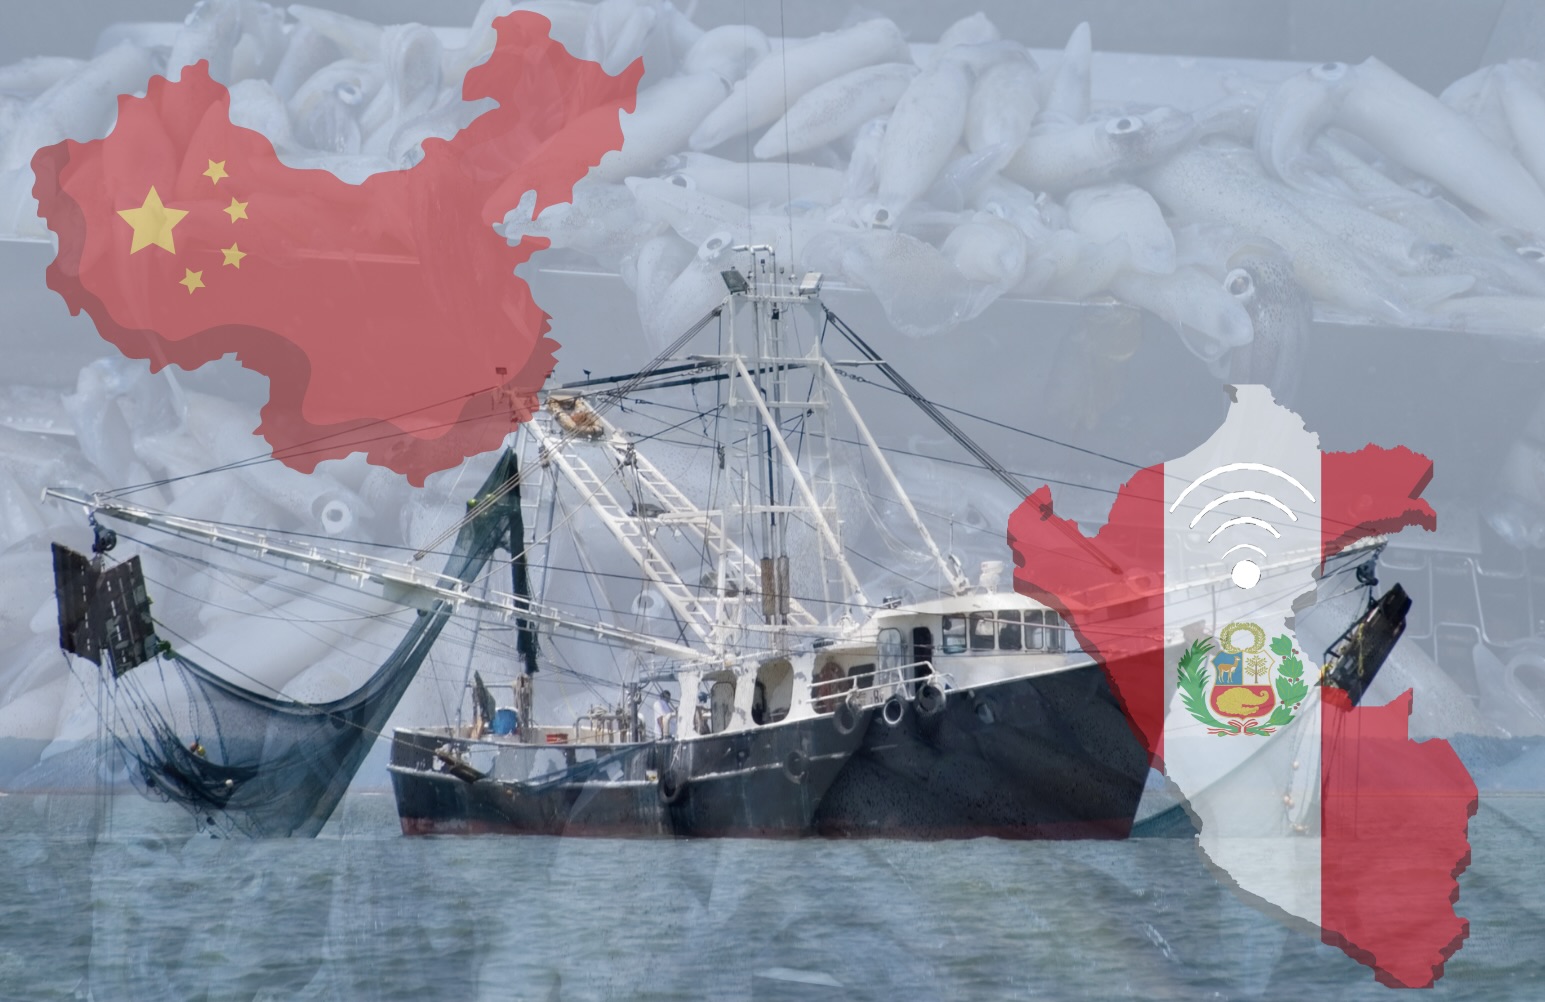 Frota chinesa desafia normas portuárias do Peru